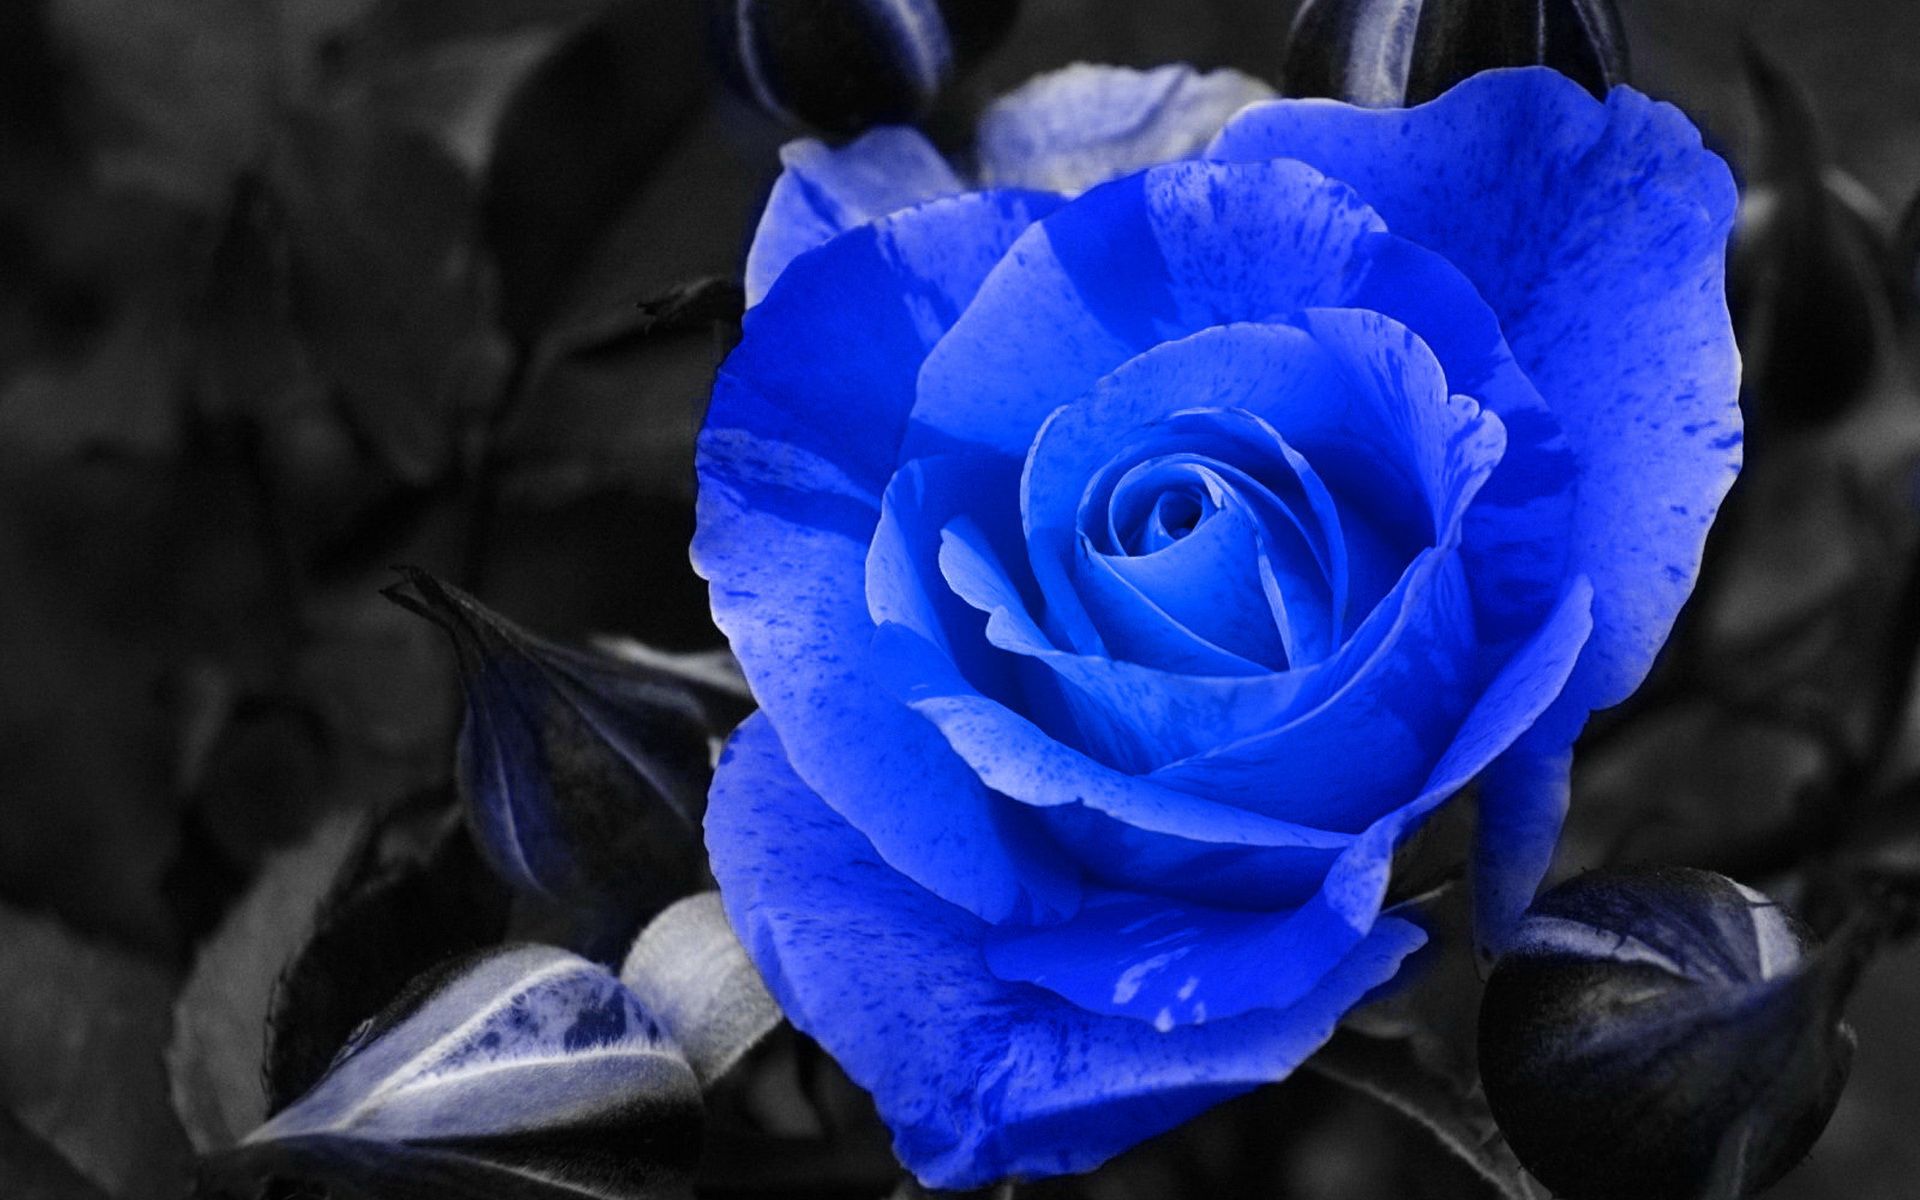 蓝色妖姬玫瑰花唯美电脑桌面壁纸高清大图预览1440x900_植物壁纸下载_美桌网